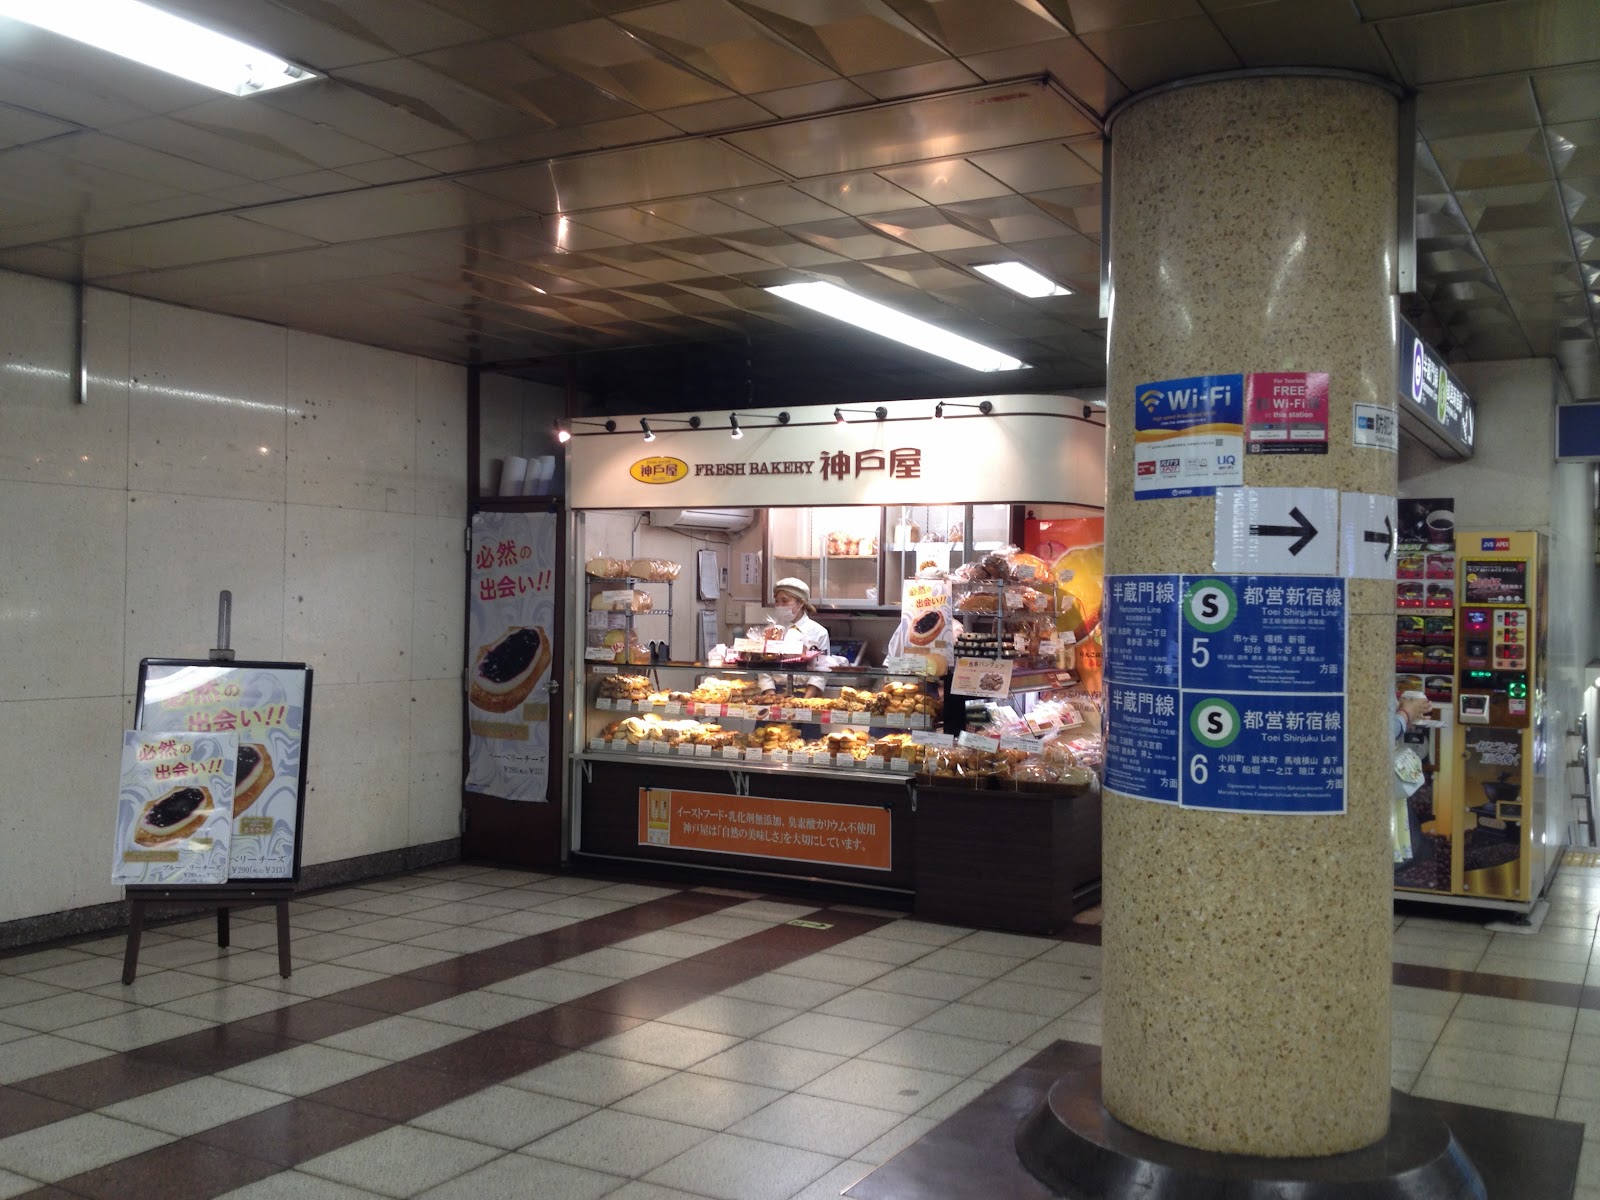 フレッシュベーカリー神戸屋 九段下駅店のイメージ